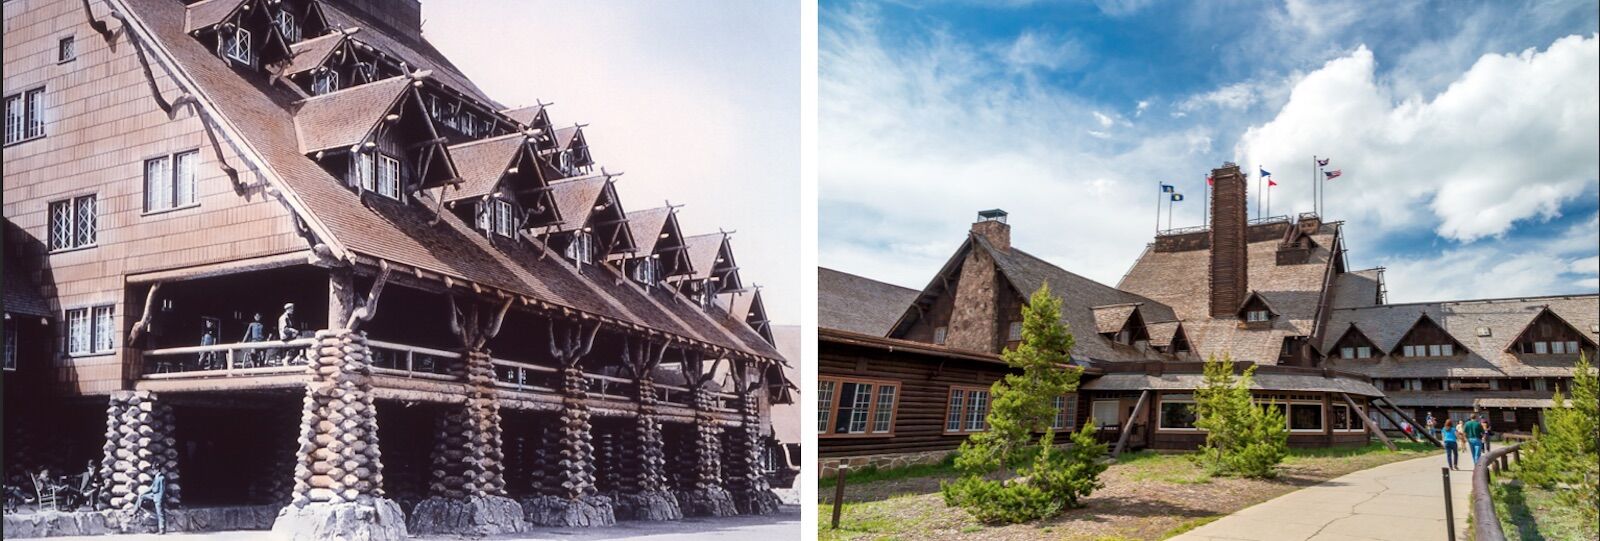 Yellowstone history: old faithful inn